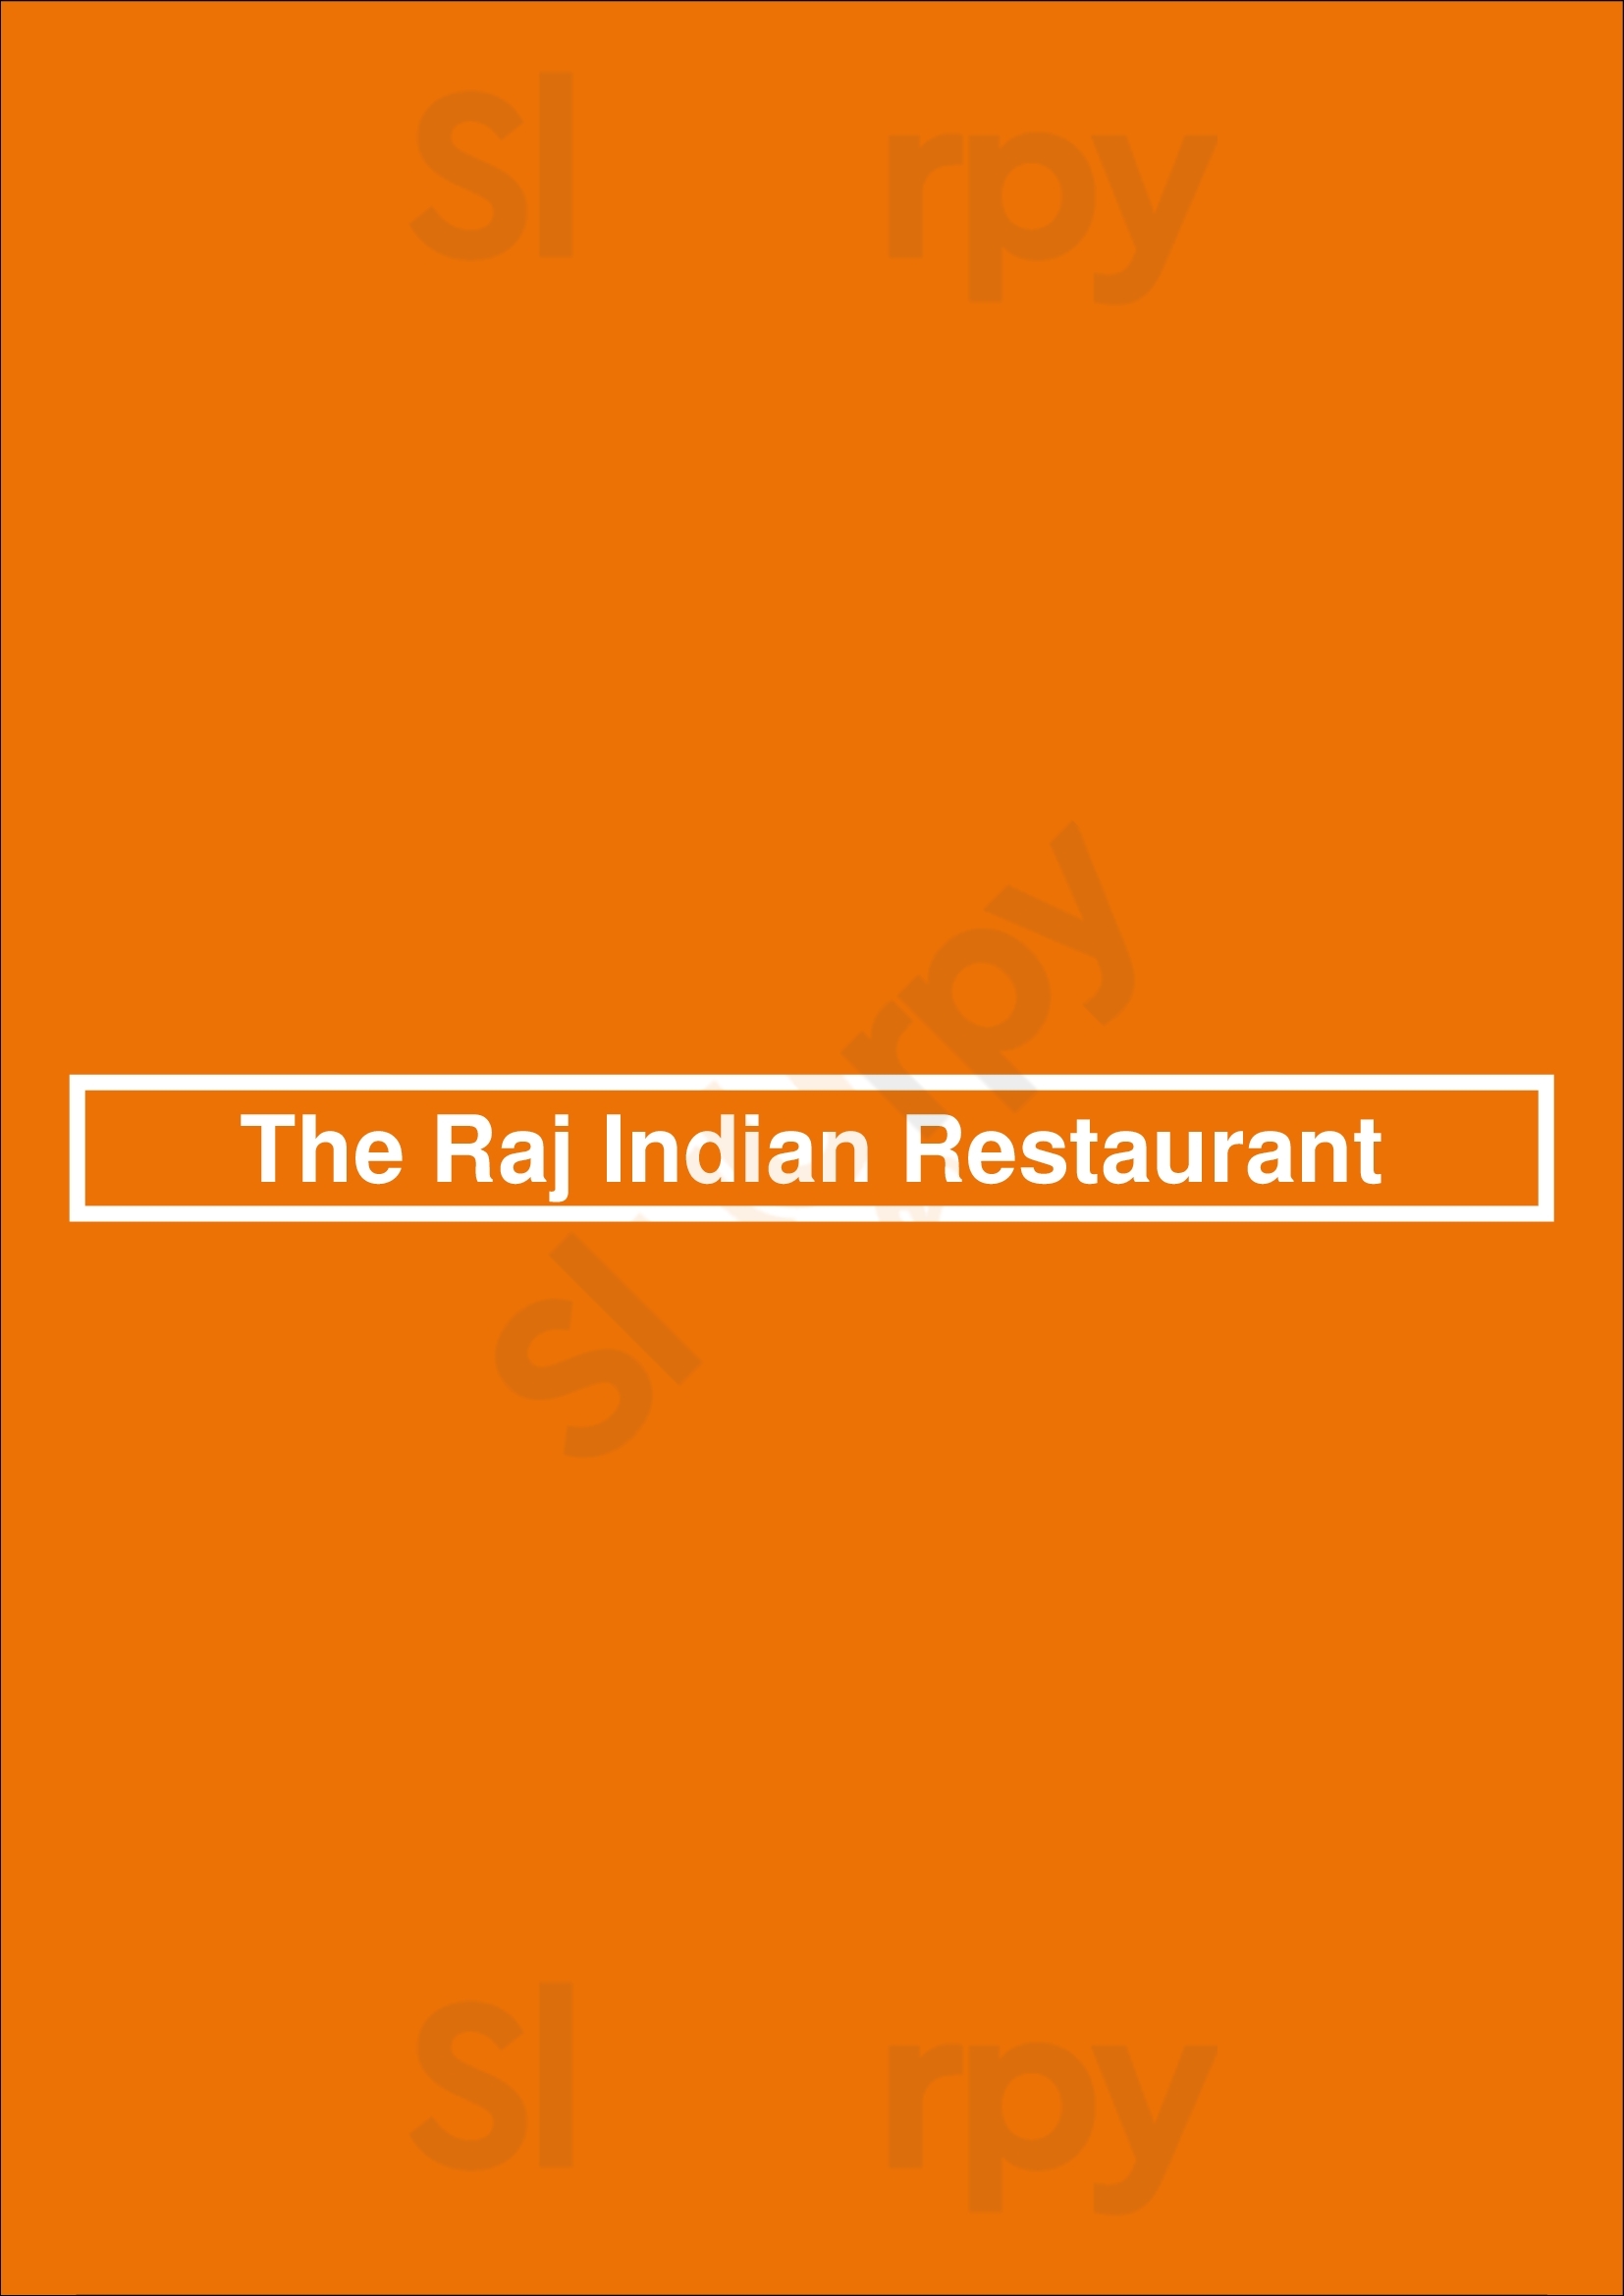 The Raj Indian Restaurant Armação de Pêra Menu - 1